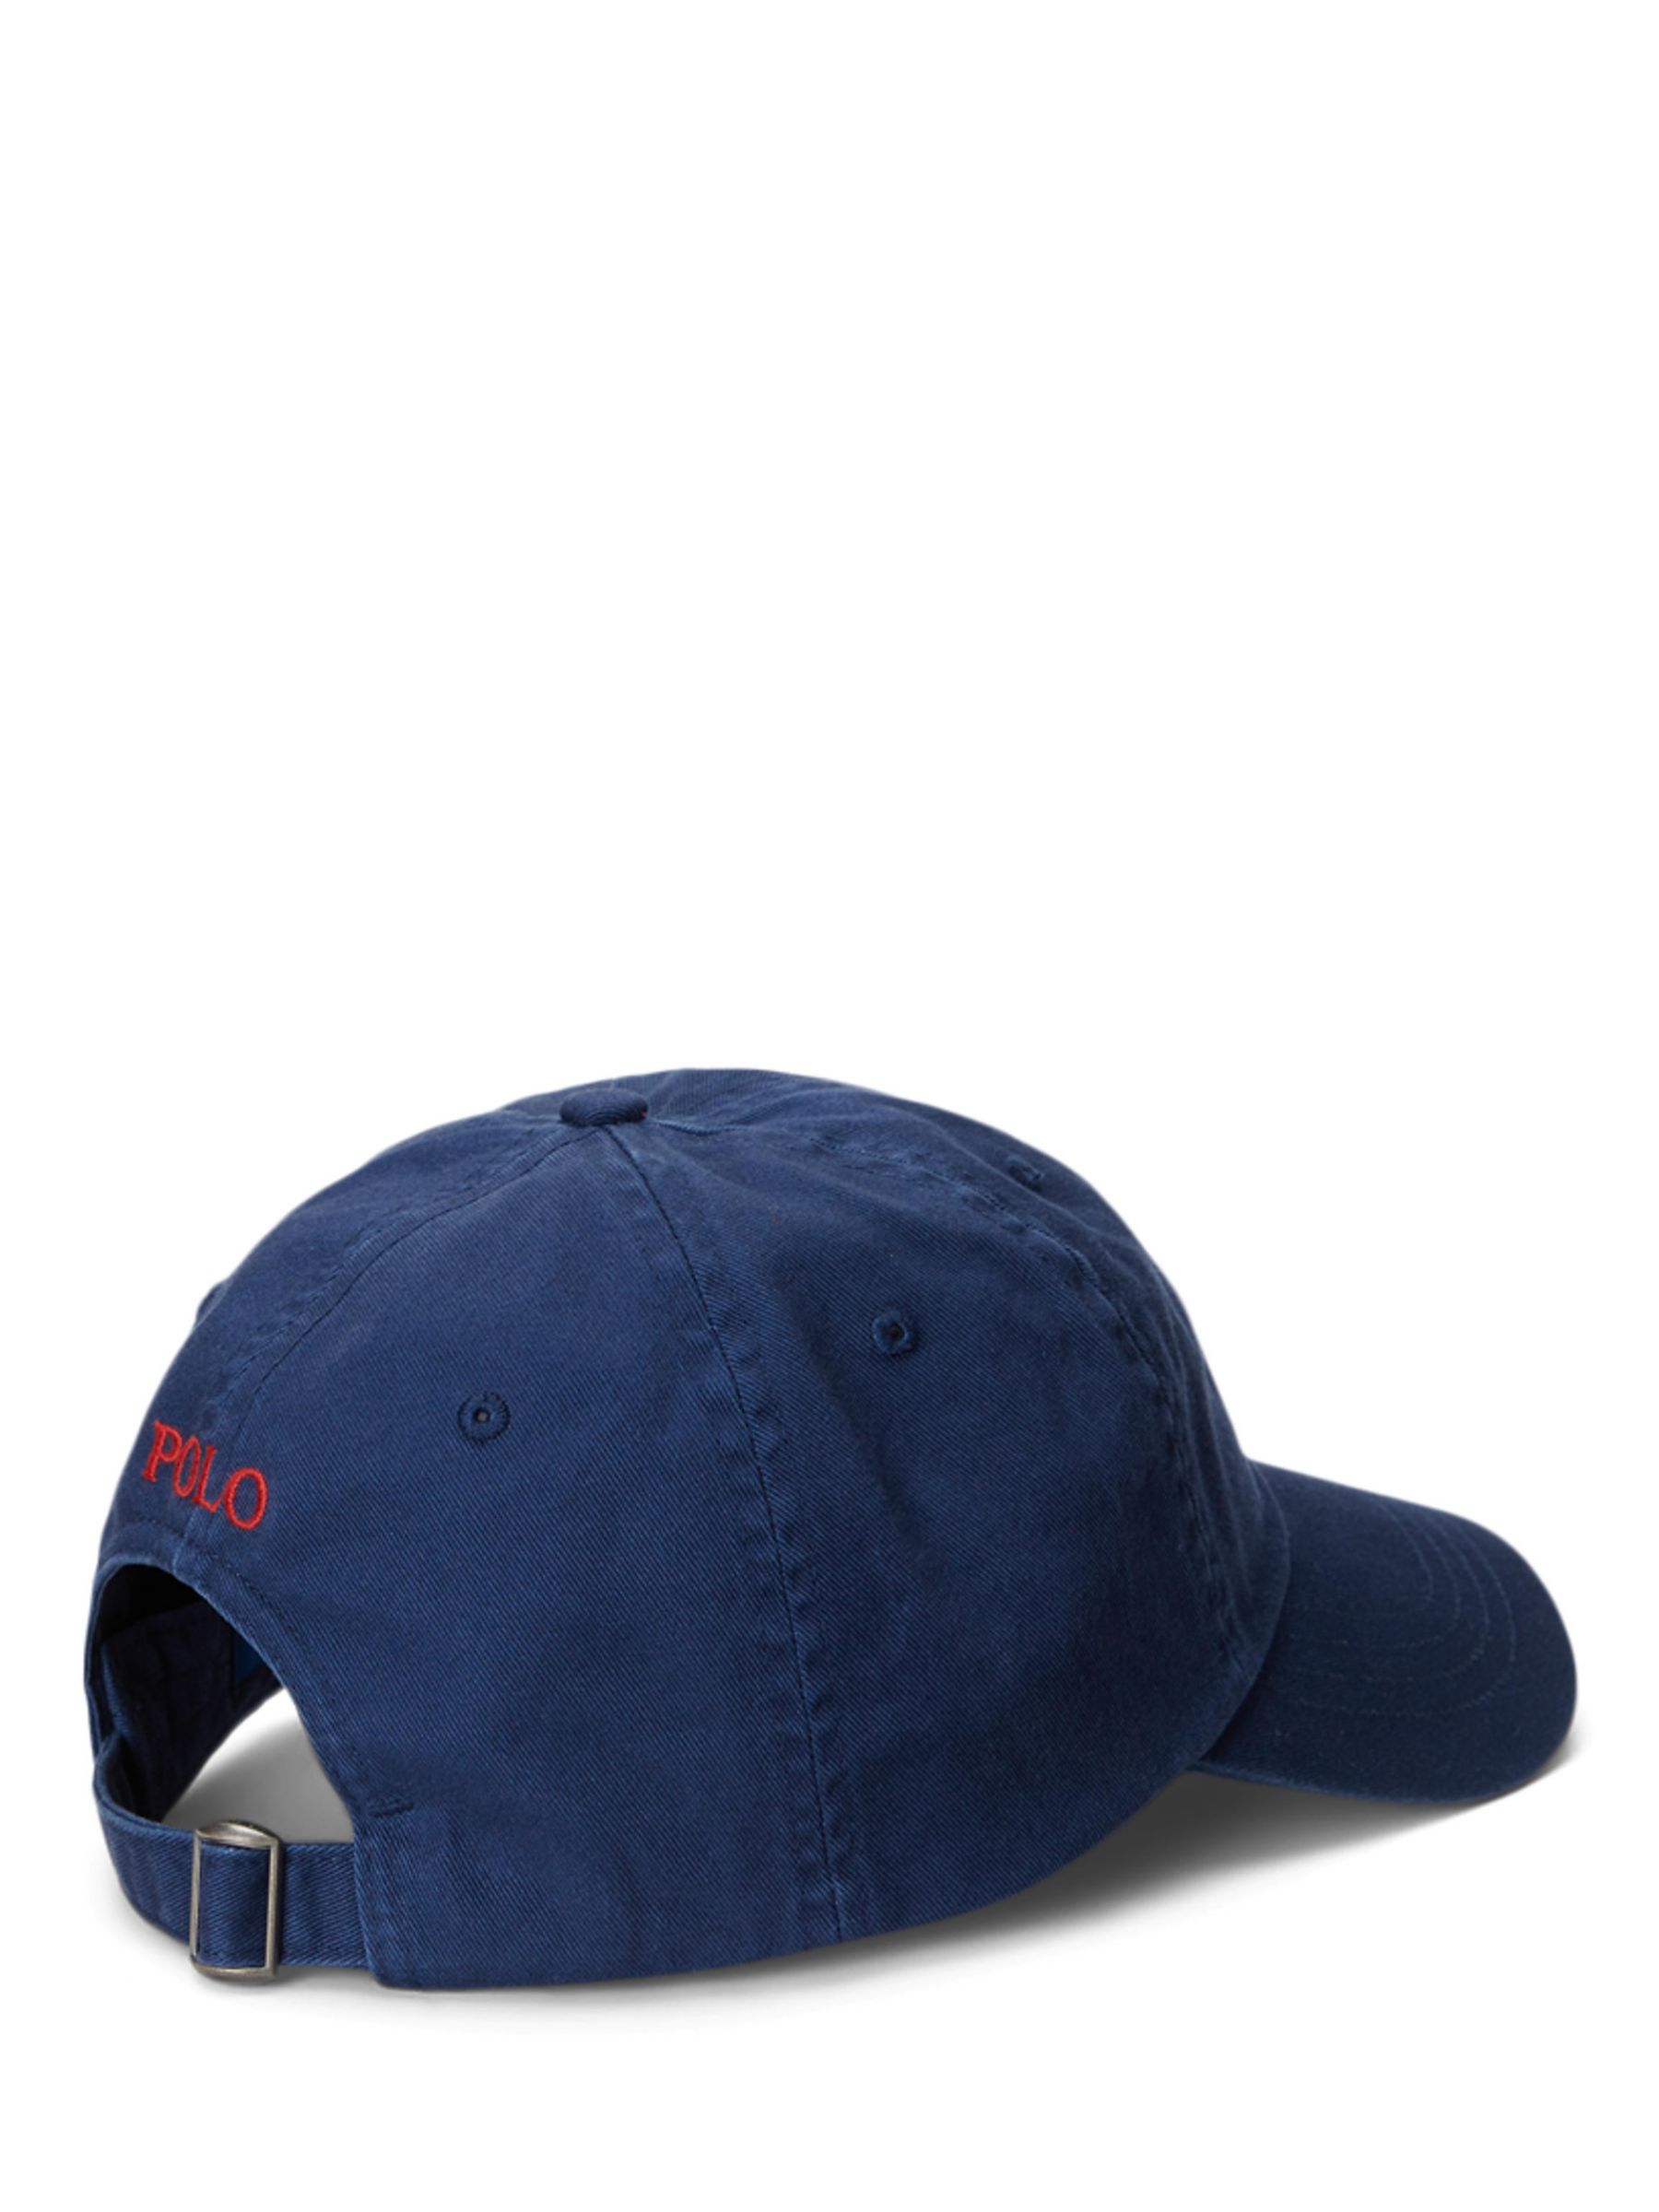 navy ralph lauren hat